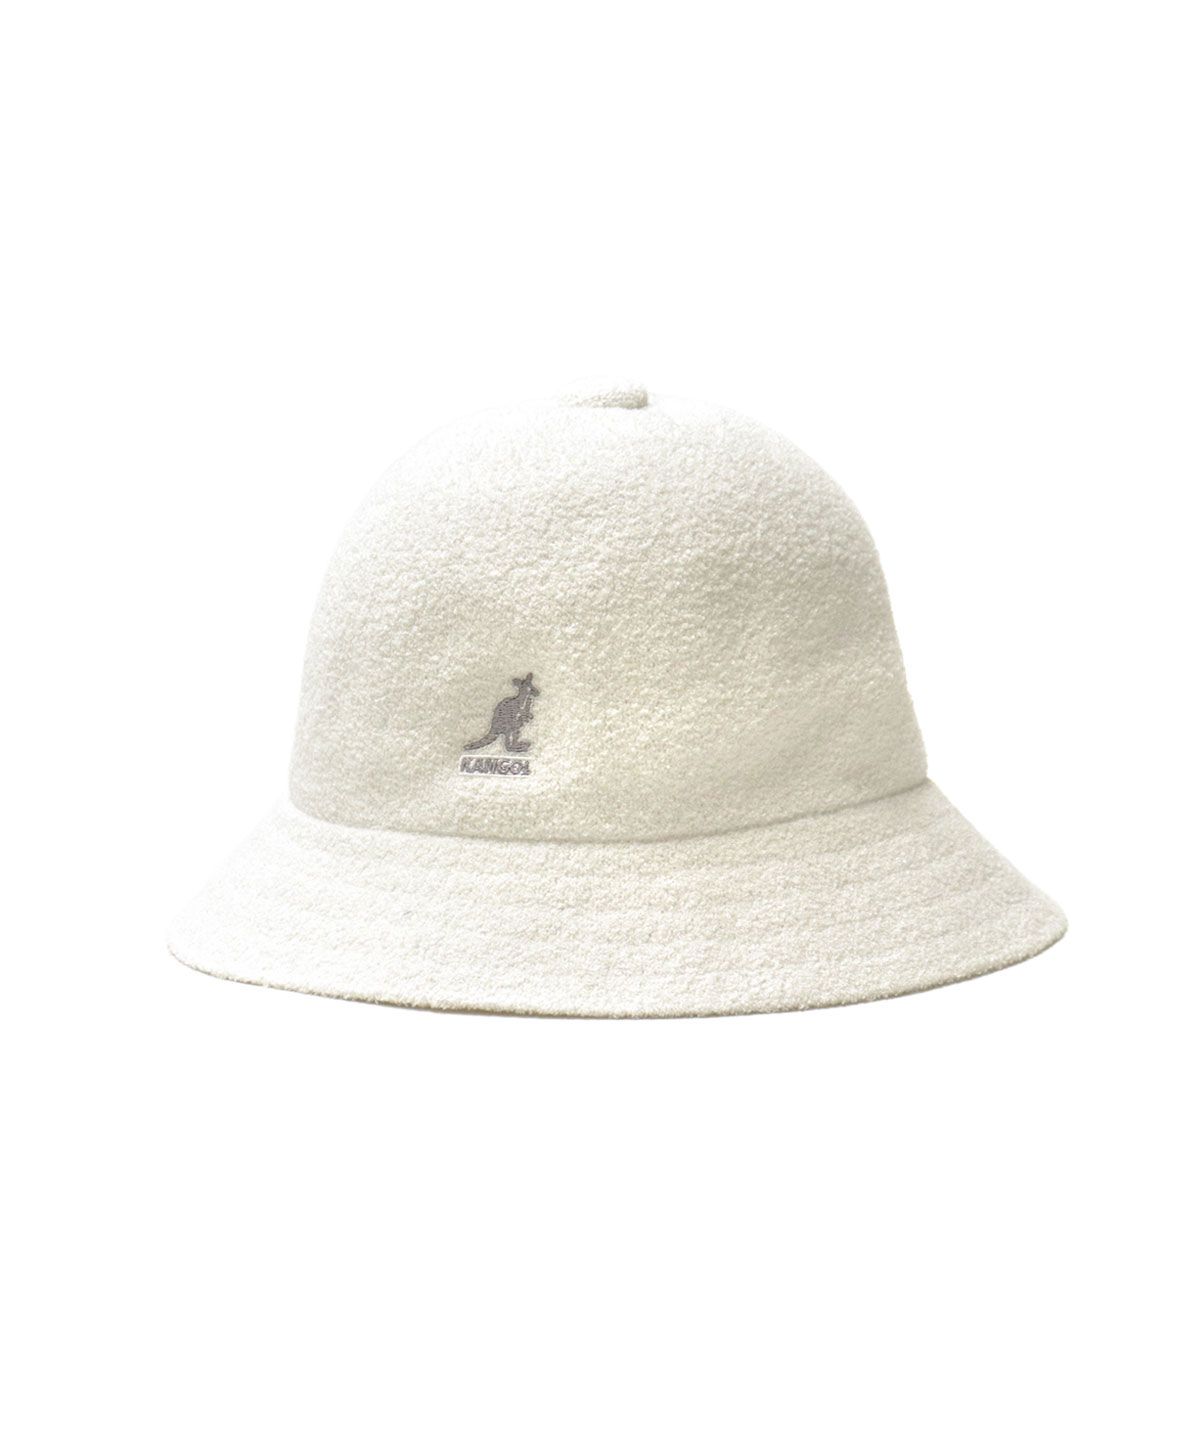 カンゴール ハット KANGOL Bermuda Casual バミューダカジュアル 帽子